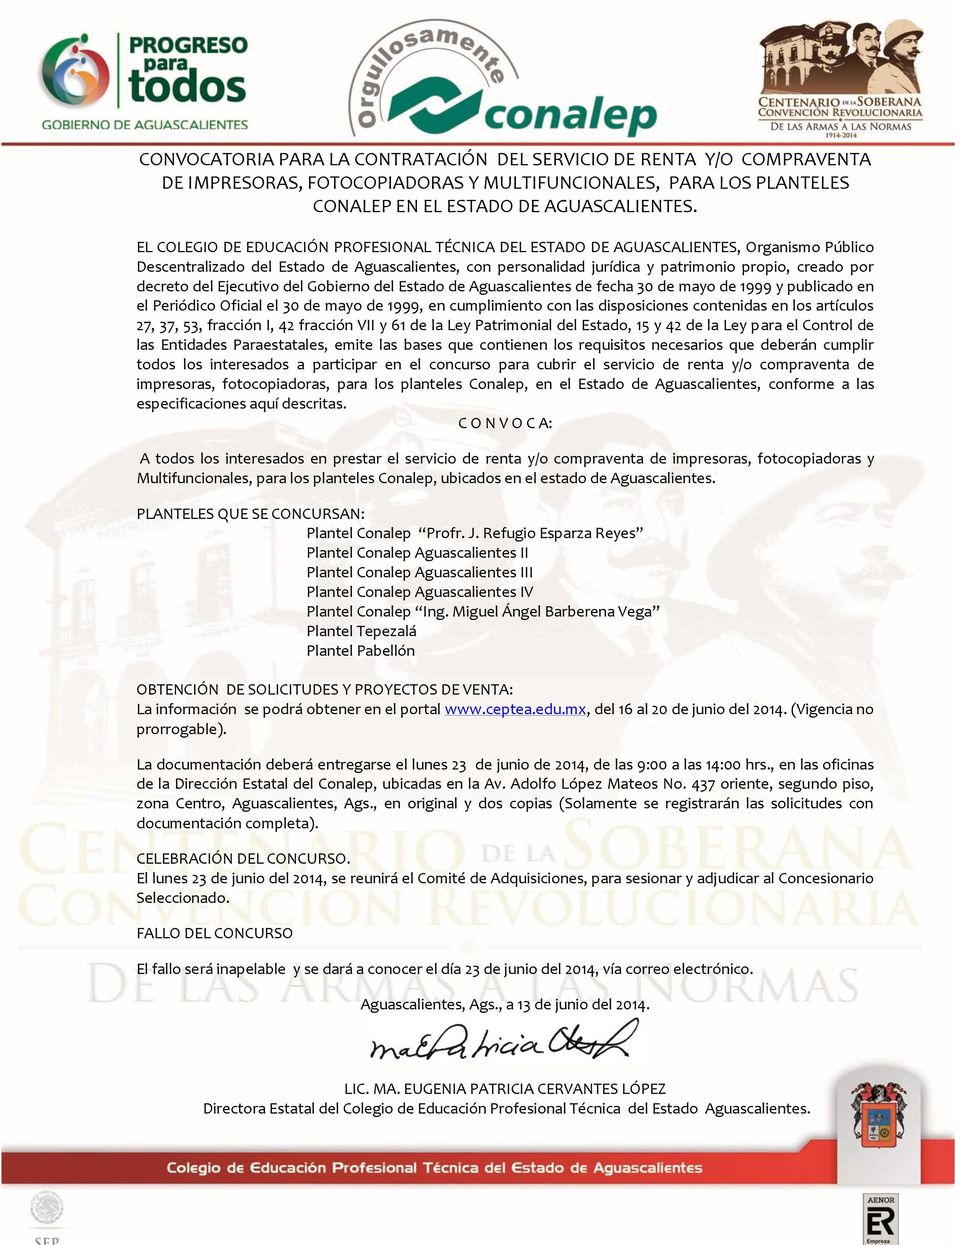 decreto del Ejecutivo del Gobierno del Estado de Aguascalientes de fecha 30 de mayo de 1999 y publicado en el Periódico Oficial el 30 de mayo de 1999, en cumplimiento con las disposiciones contenidas